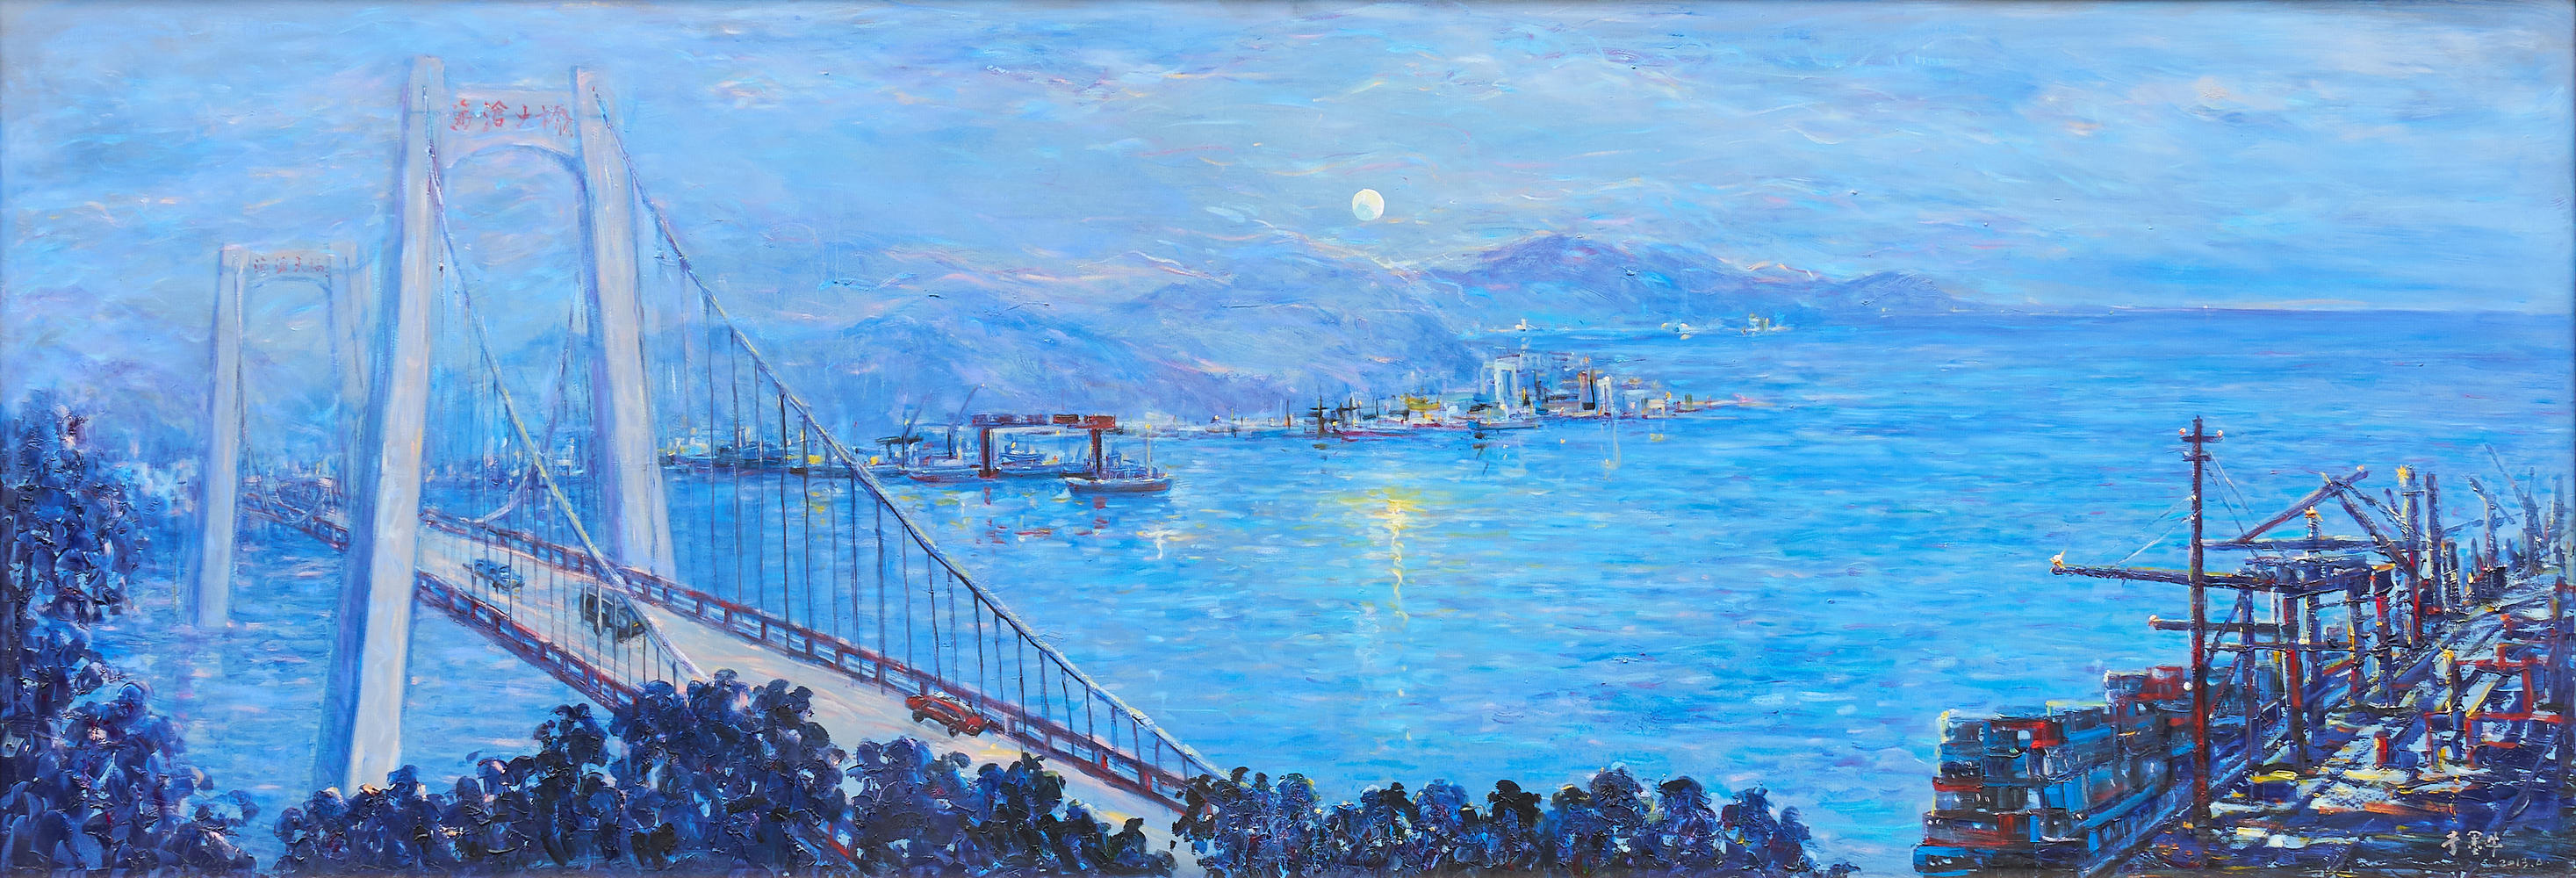 《新港之月》120x280cm 布面油画 2013年